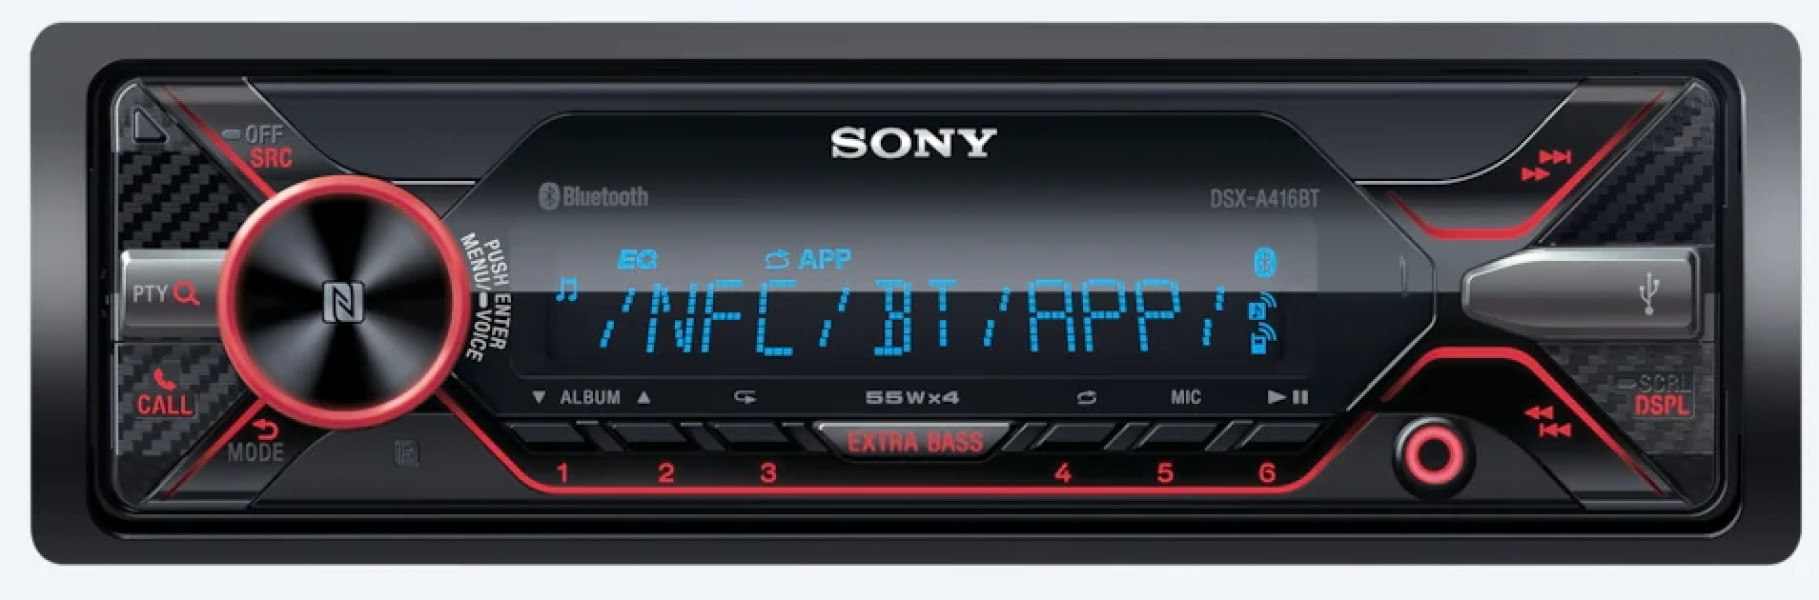 Sony DSX-A416BT - multicolor